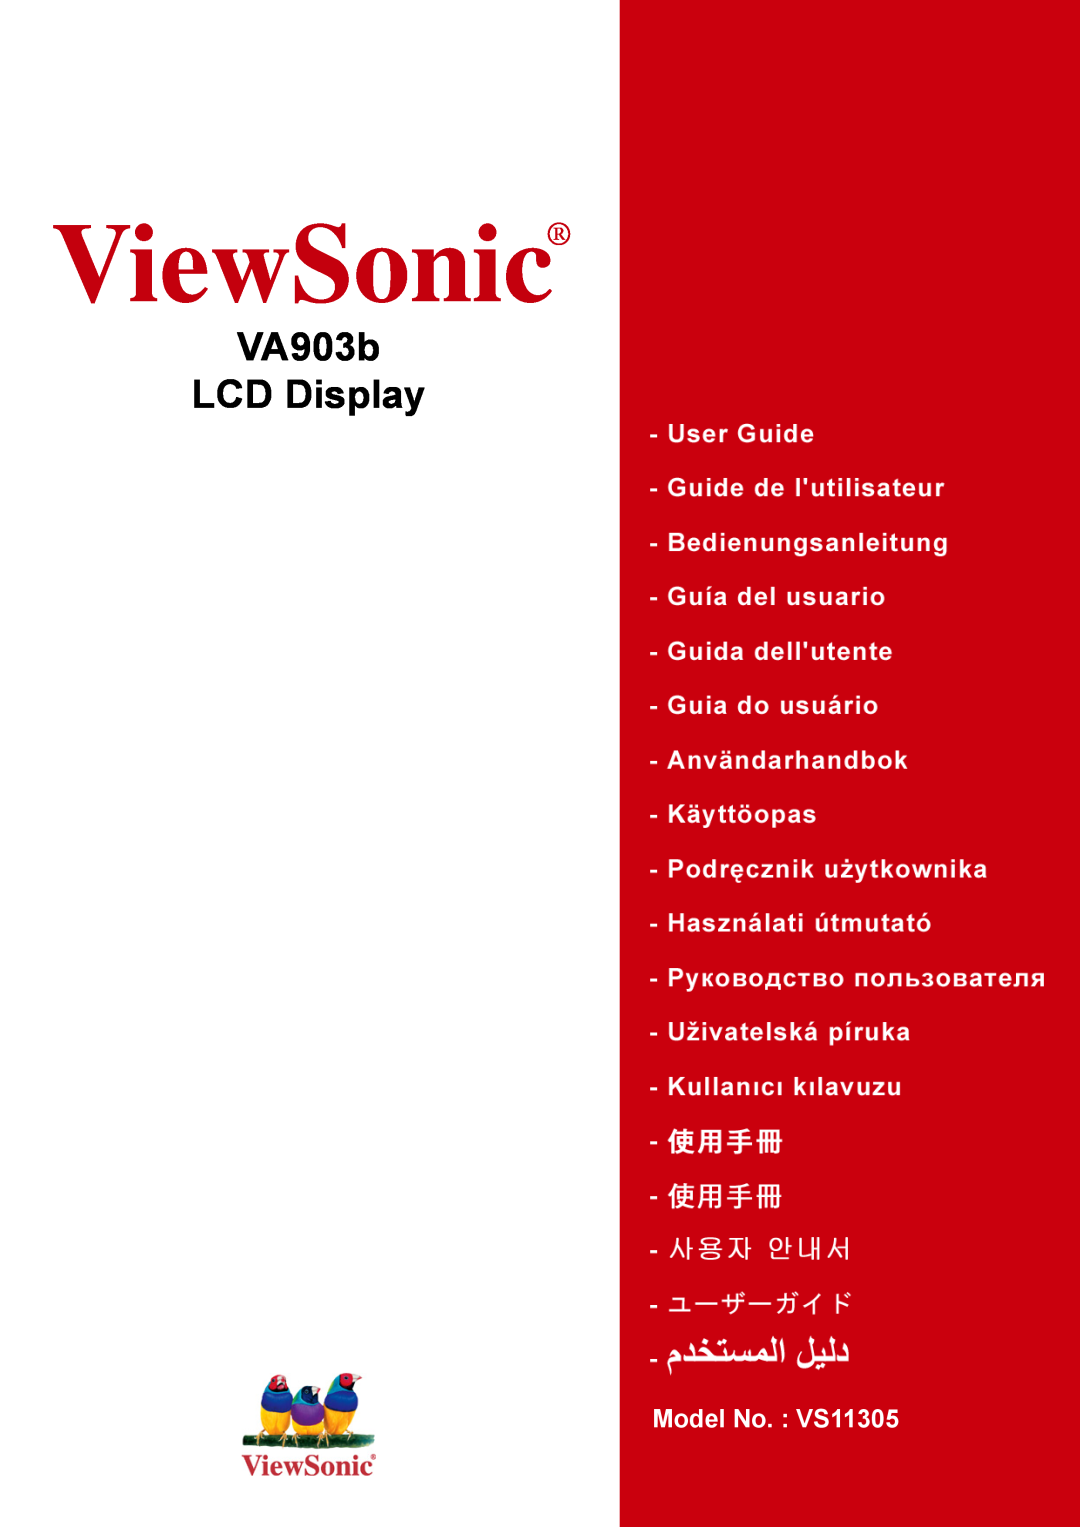 ViewSonic V903b manual ViewSonic, VA903b LCD Display, Model No. : VS11305 